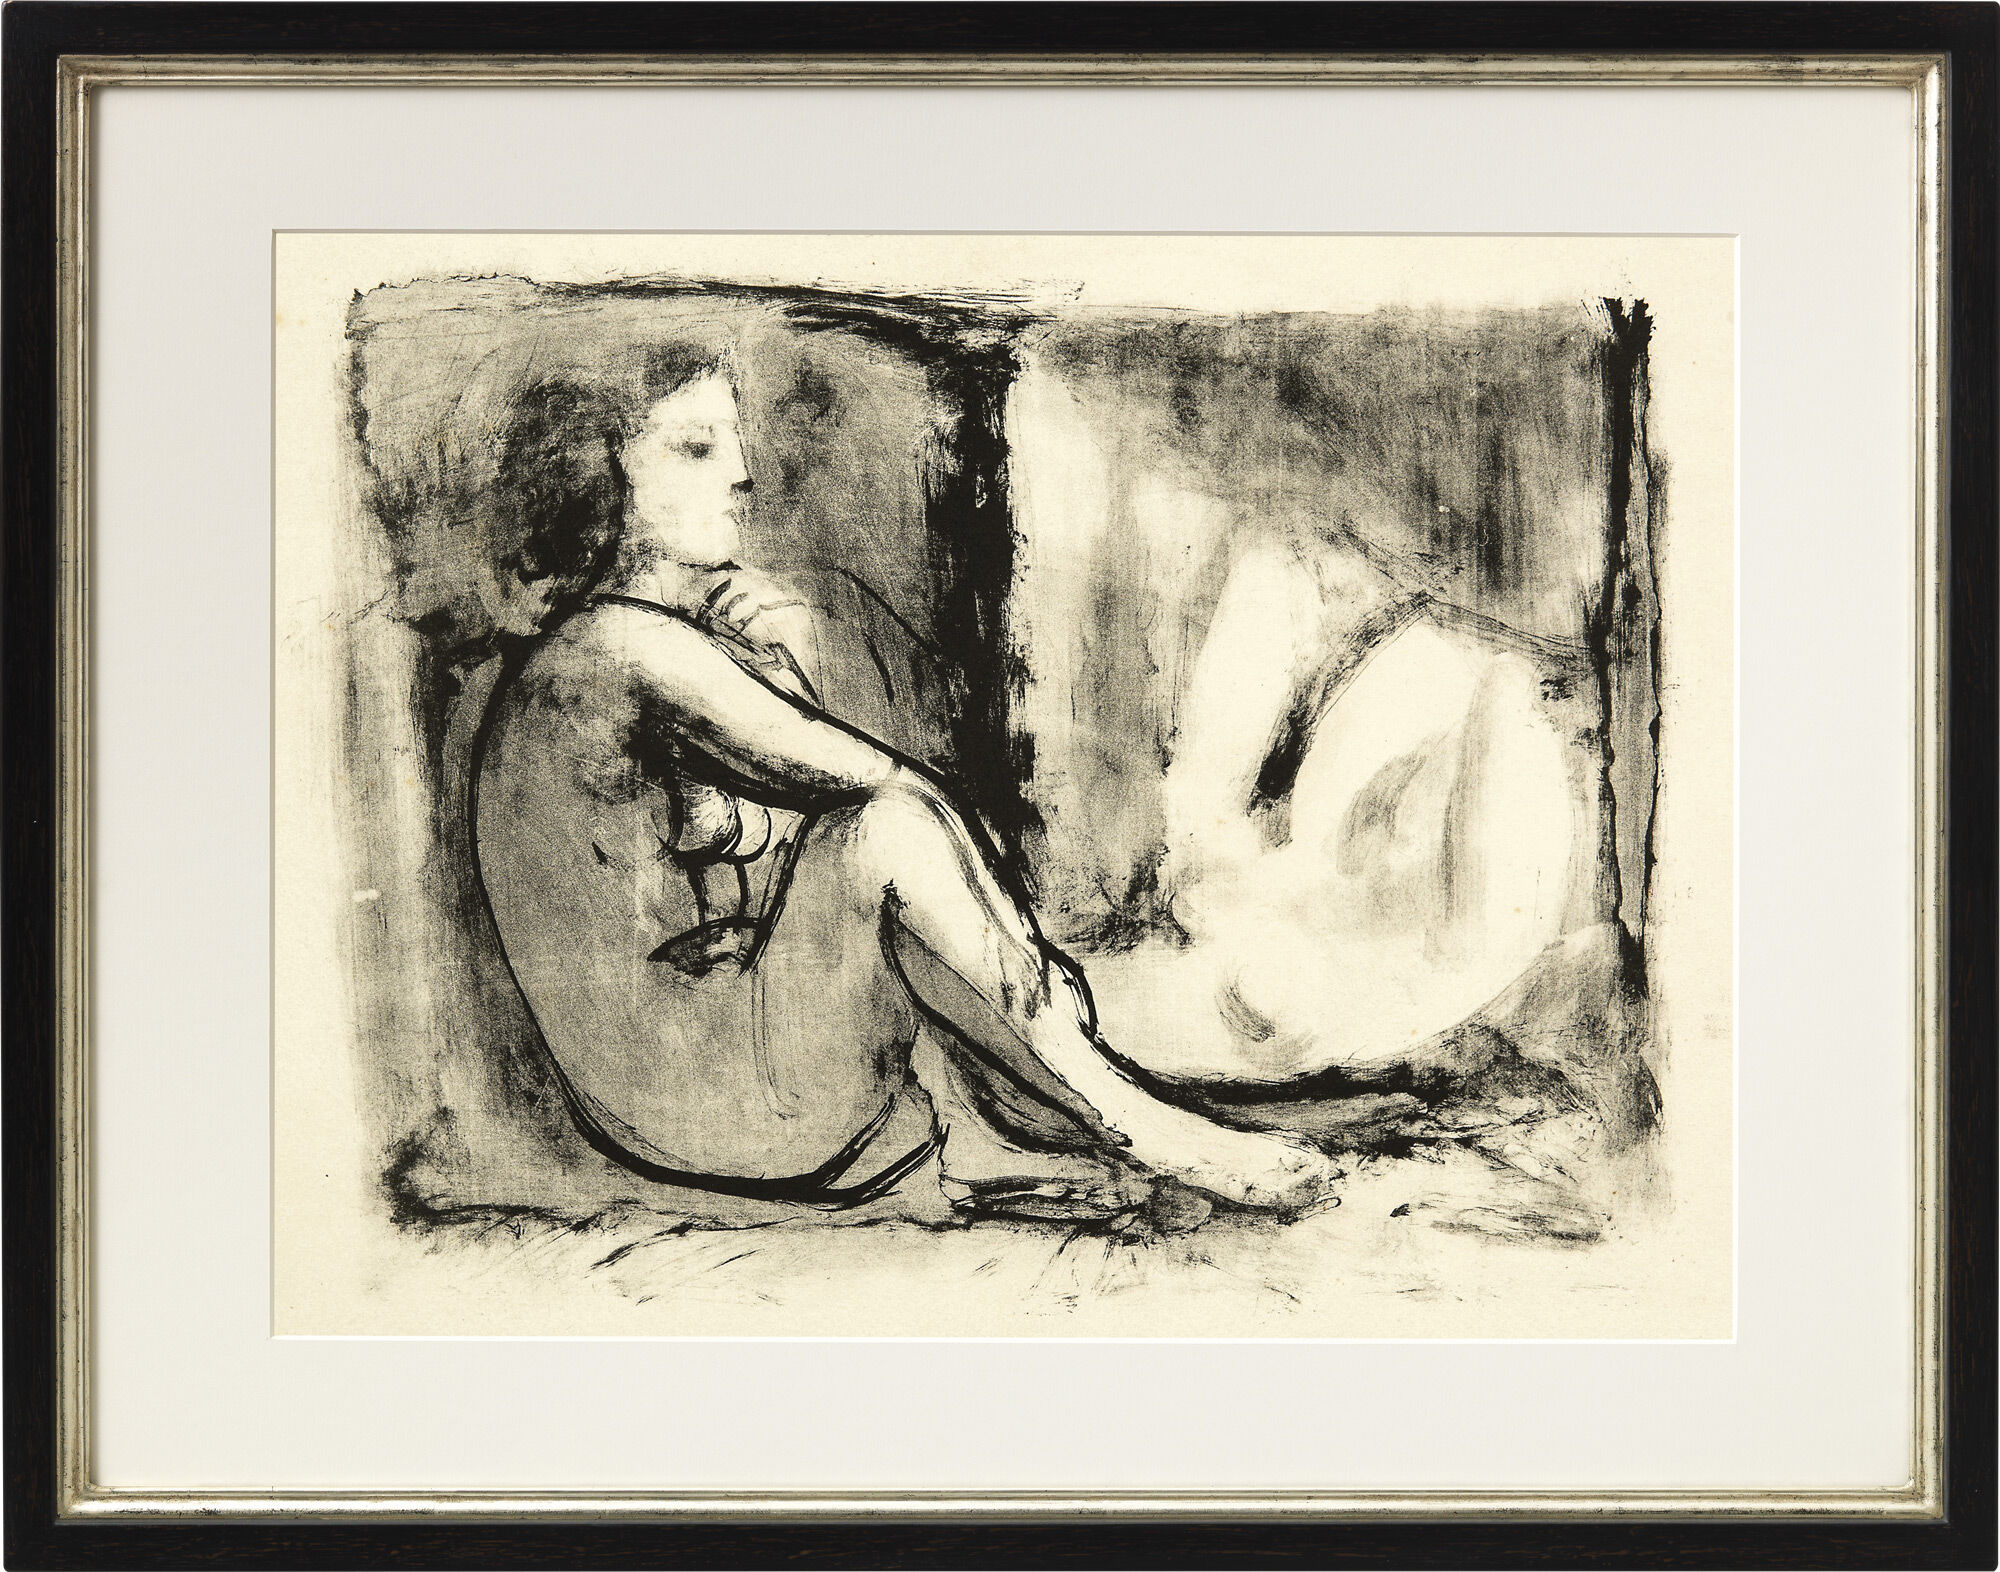 Bild "Les deux femmes nues" (1945) von Pablo Picasso